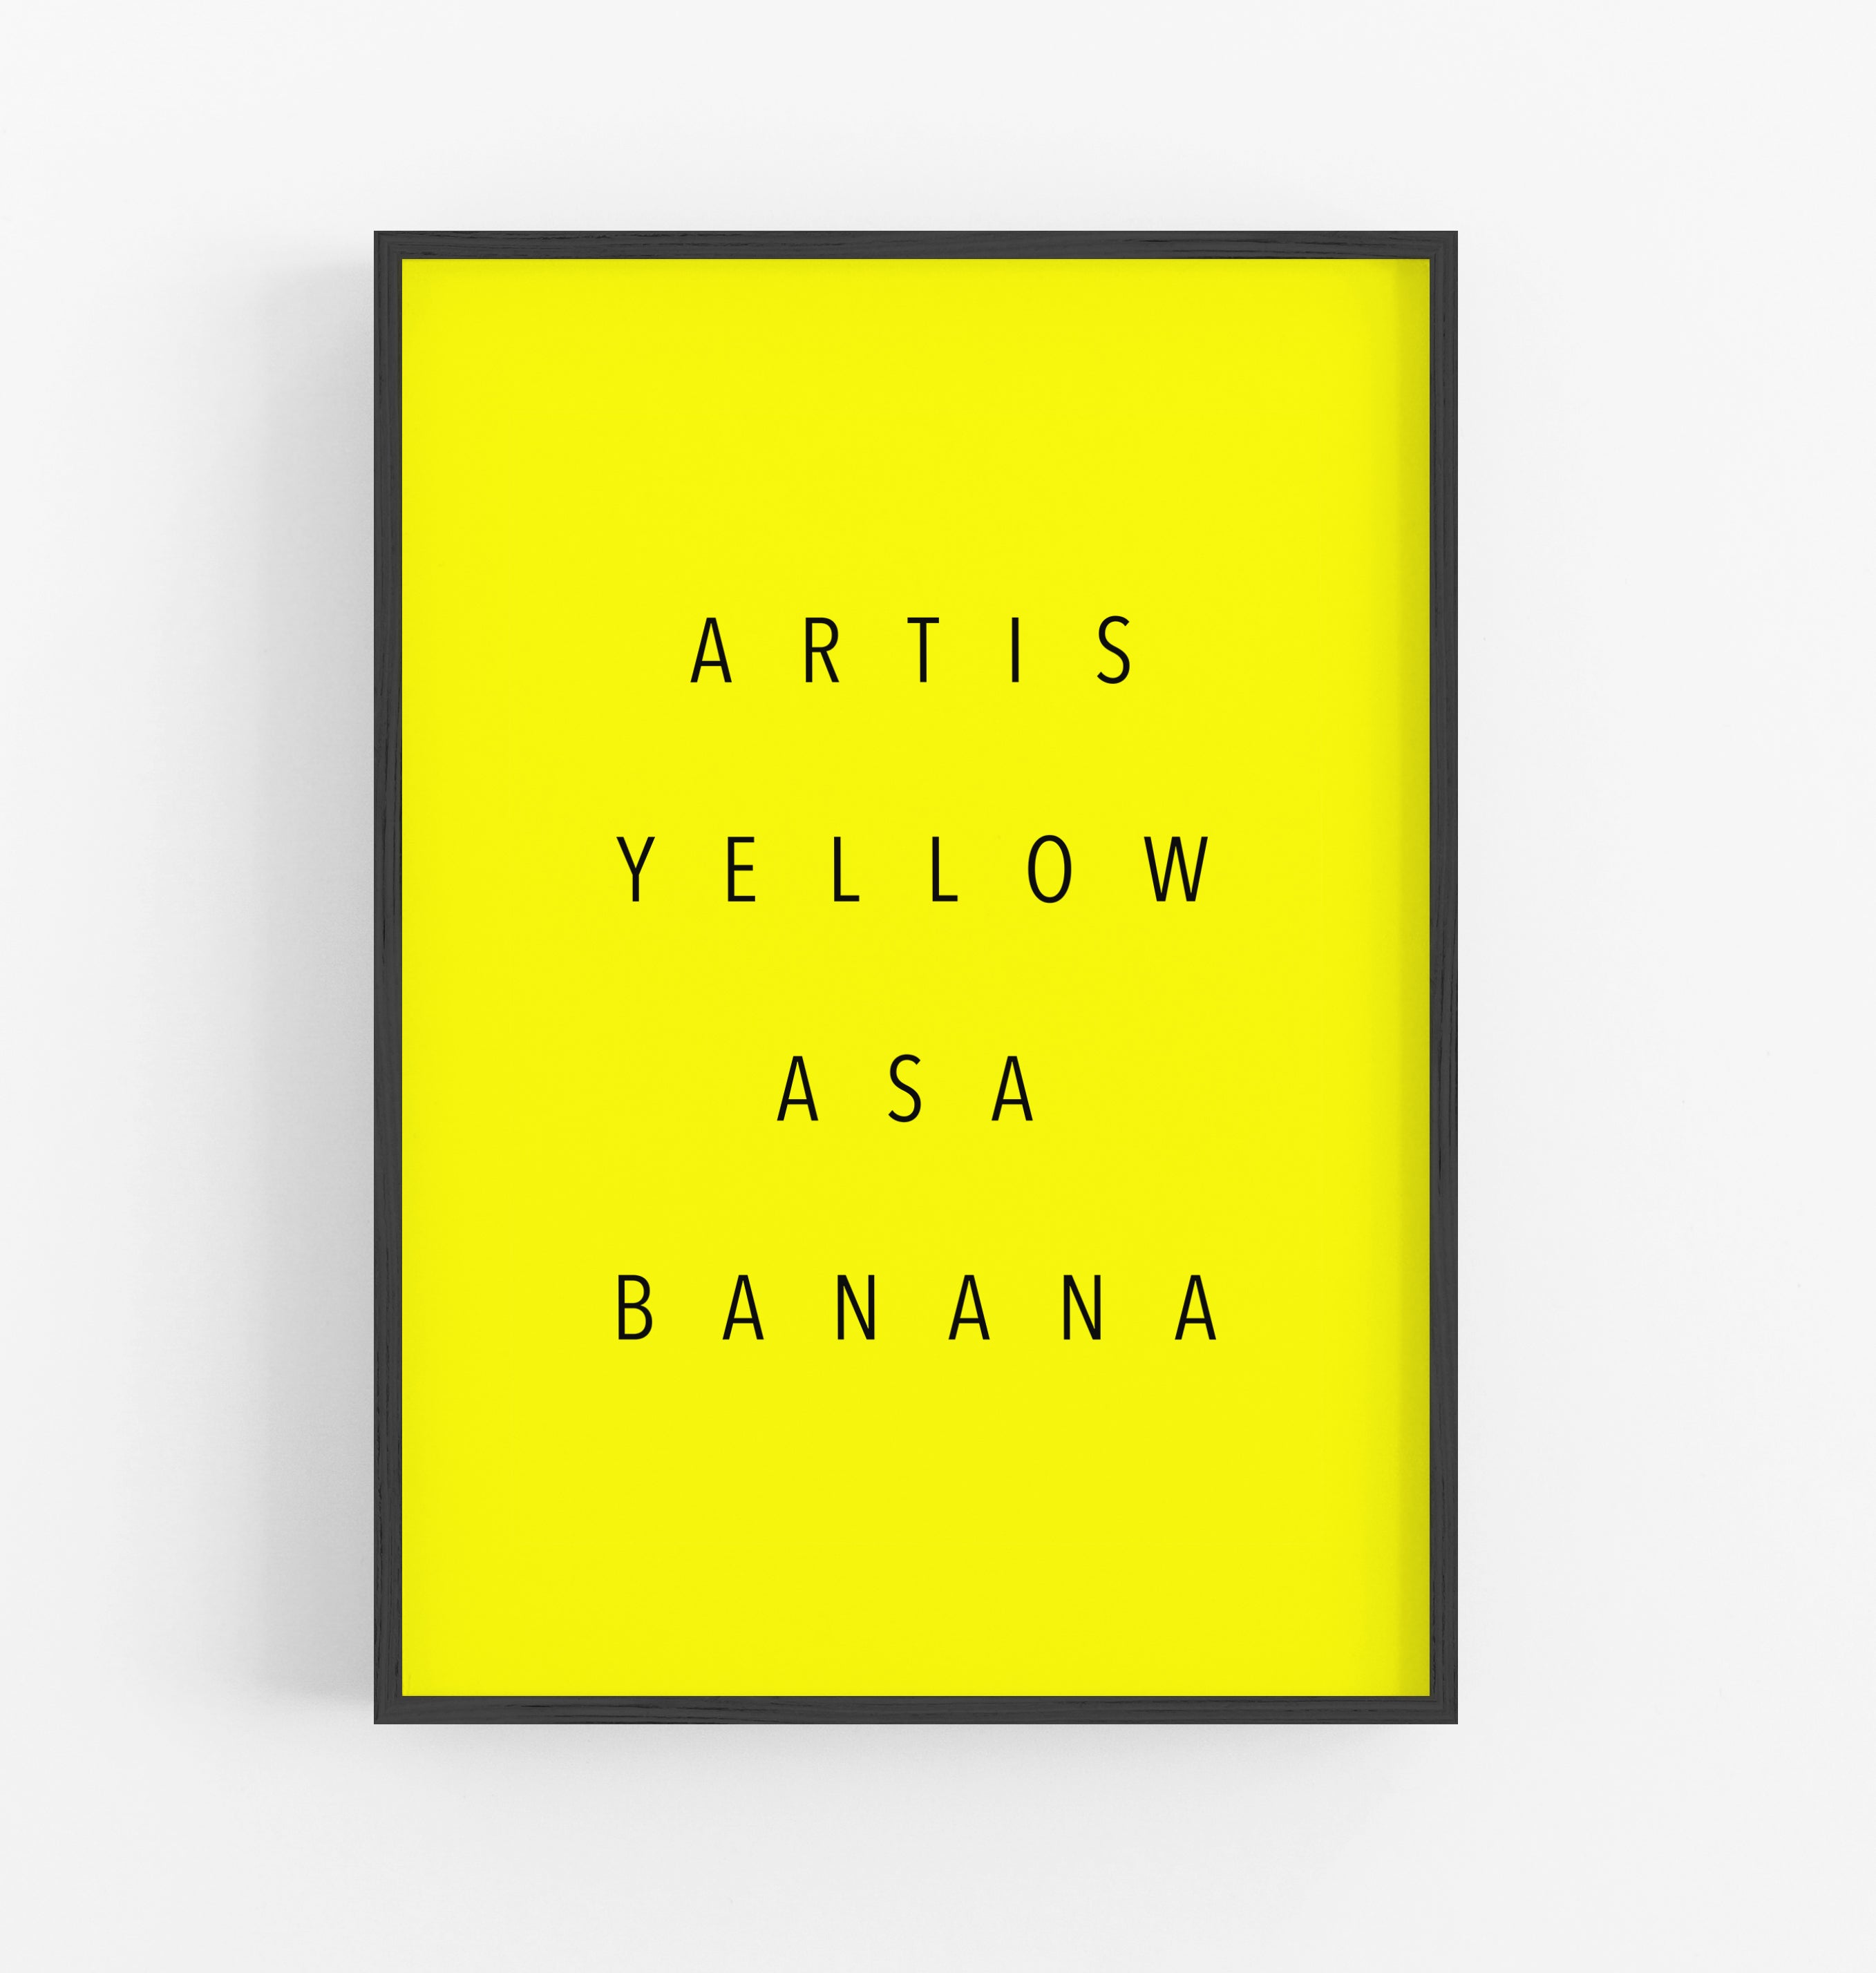 Art is Yellow